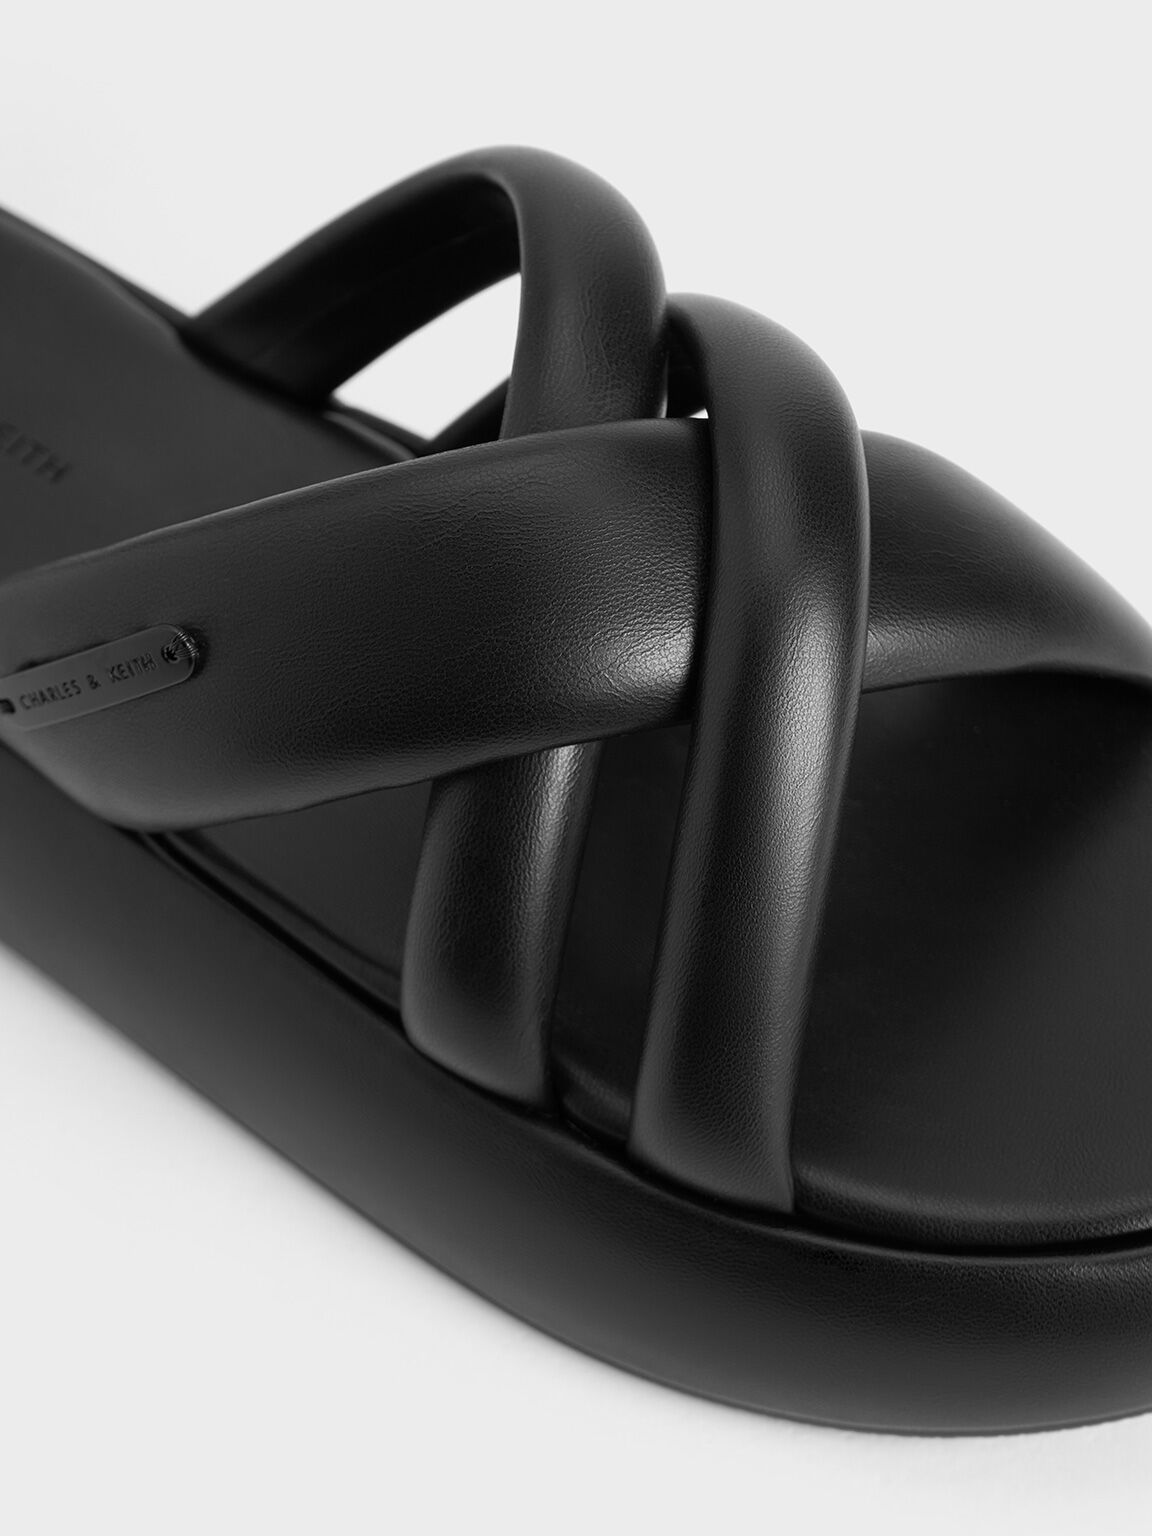 Puffy Crossover-Strap Slide Sandals, Black, hi-res